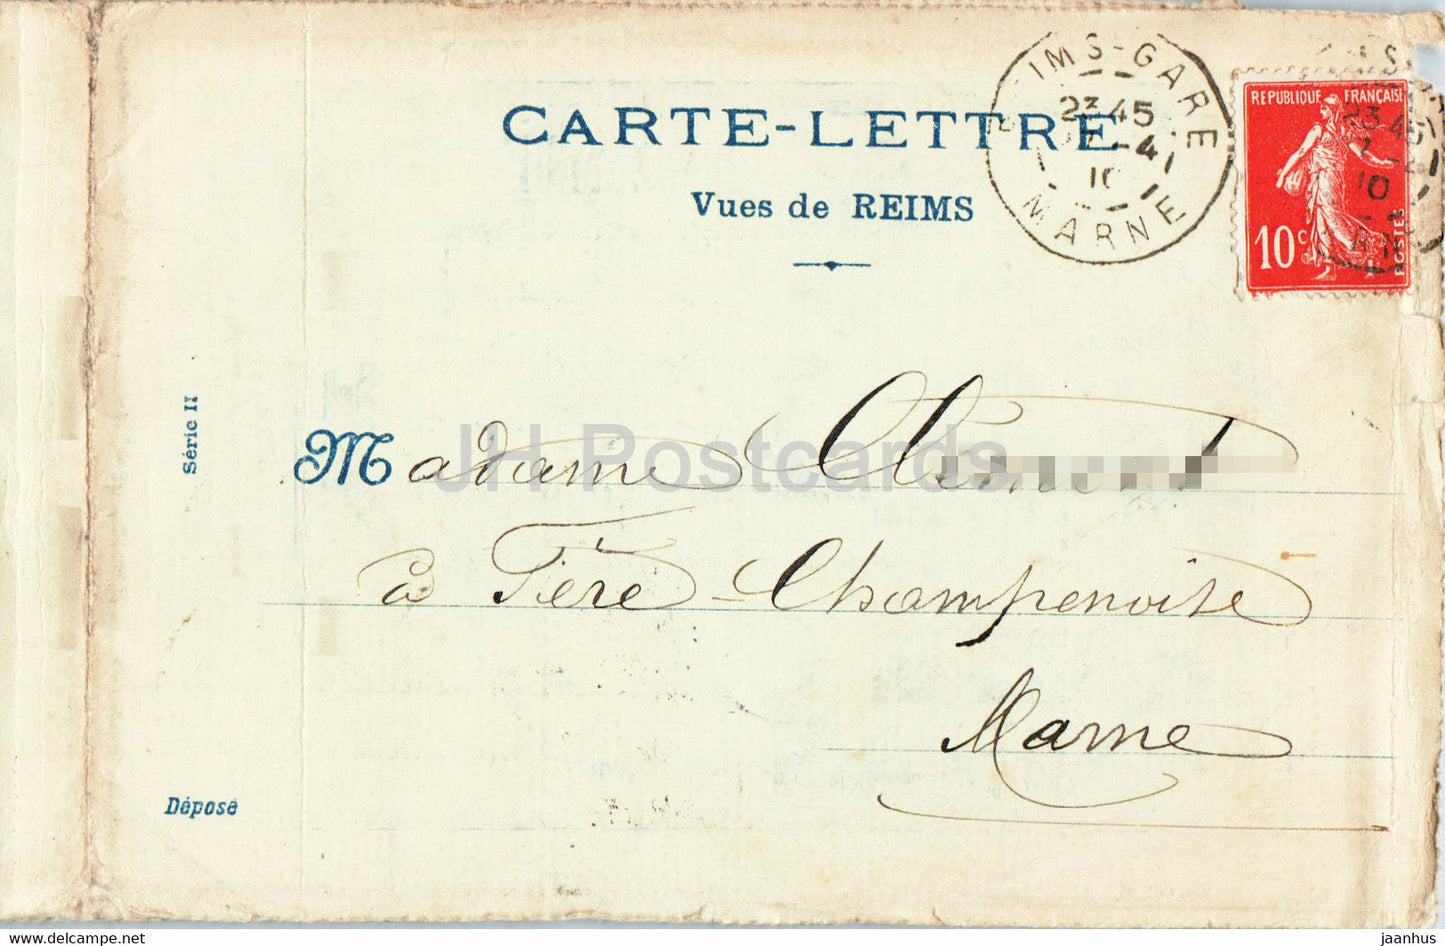 Reims - Place des Marches - Modes A la Glaneuse - carte postale ancienne - 1910 - France - occasion